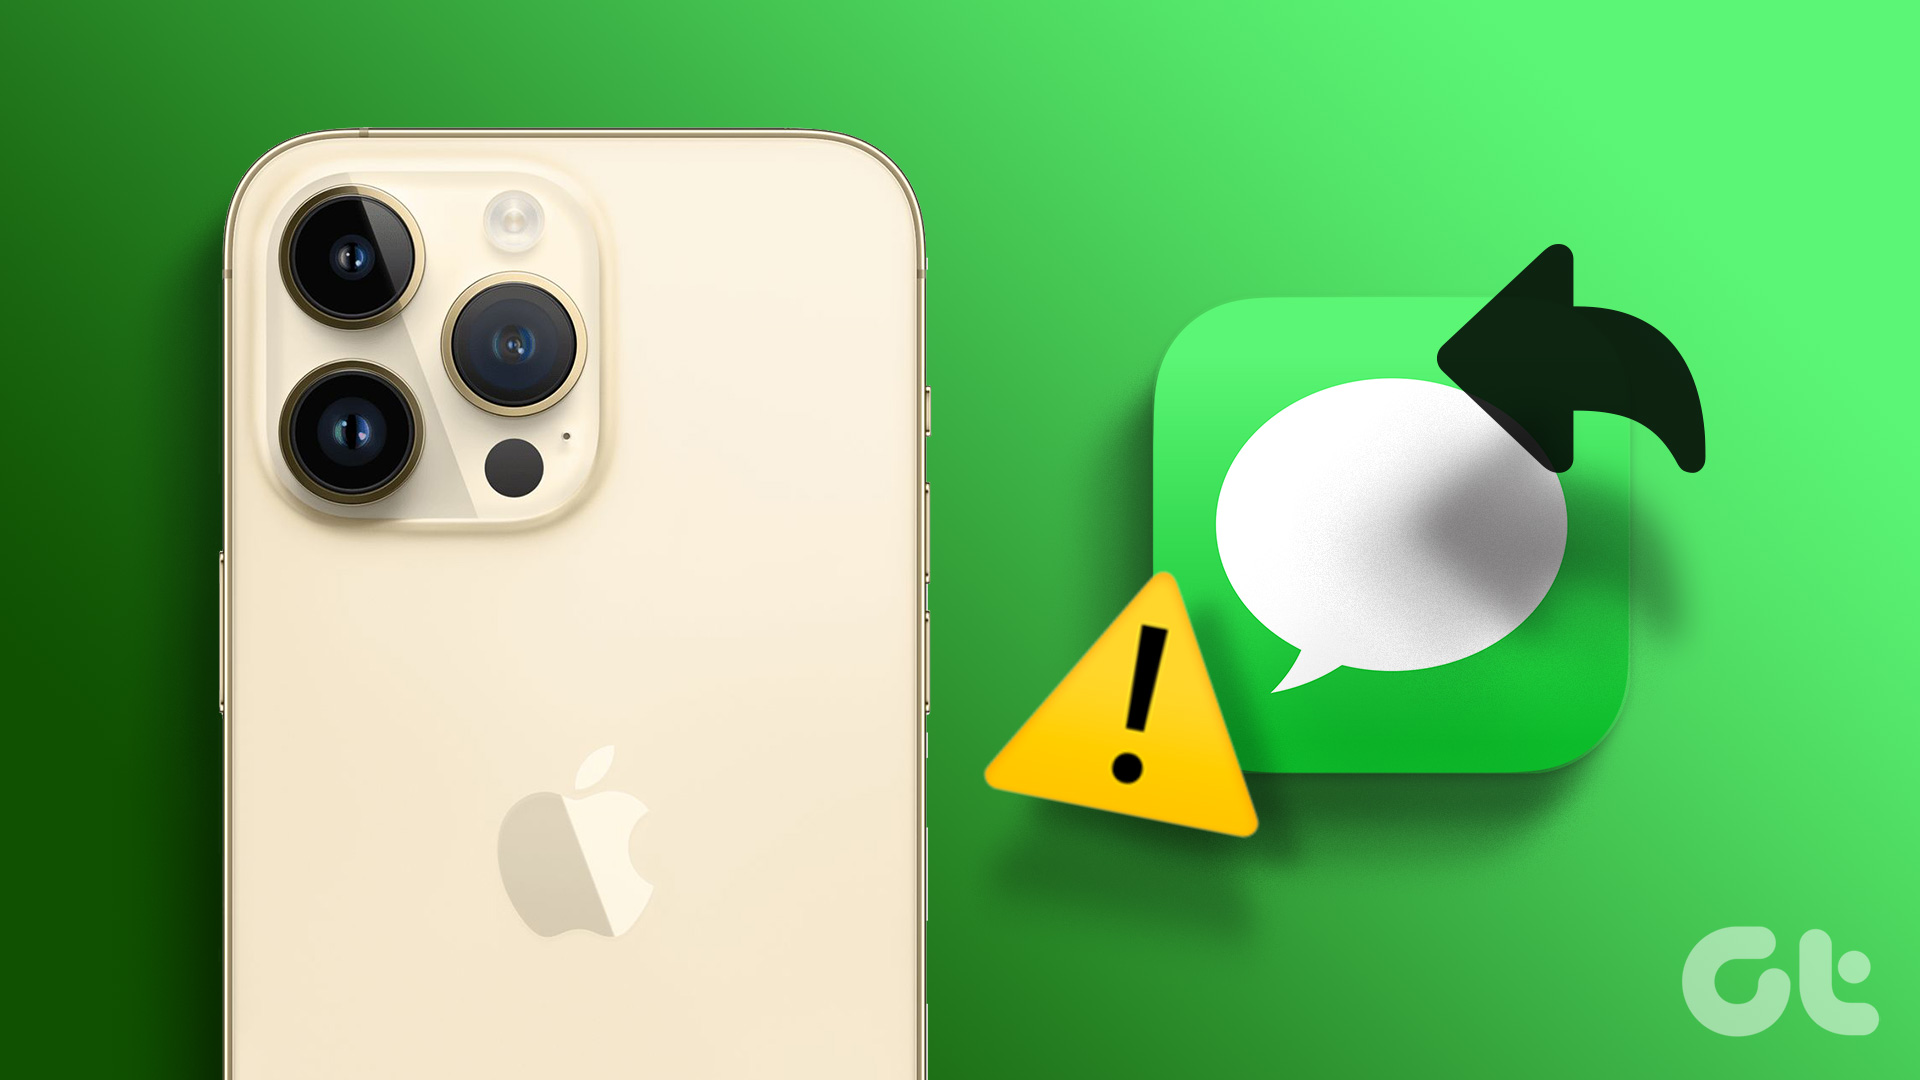 fix iPhone not receiving texts